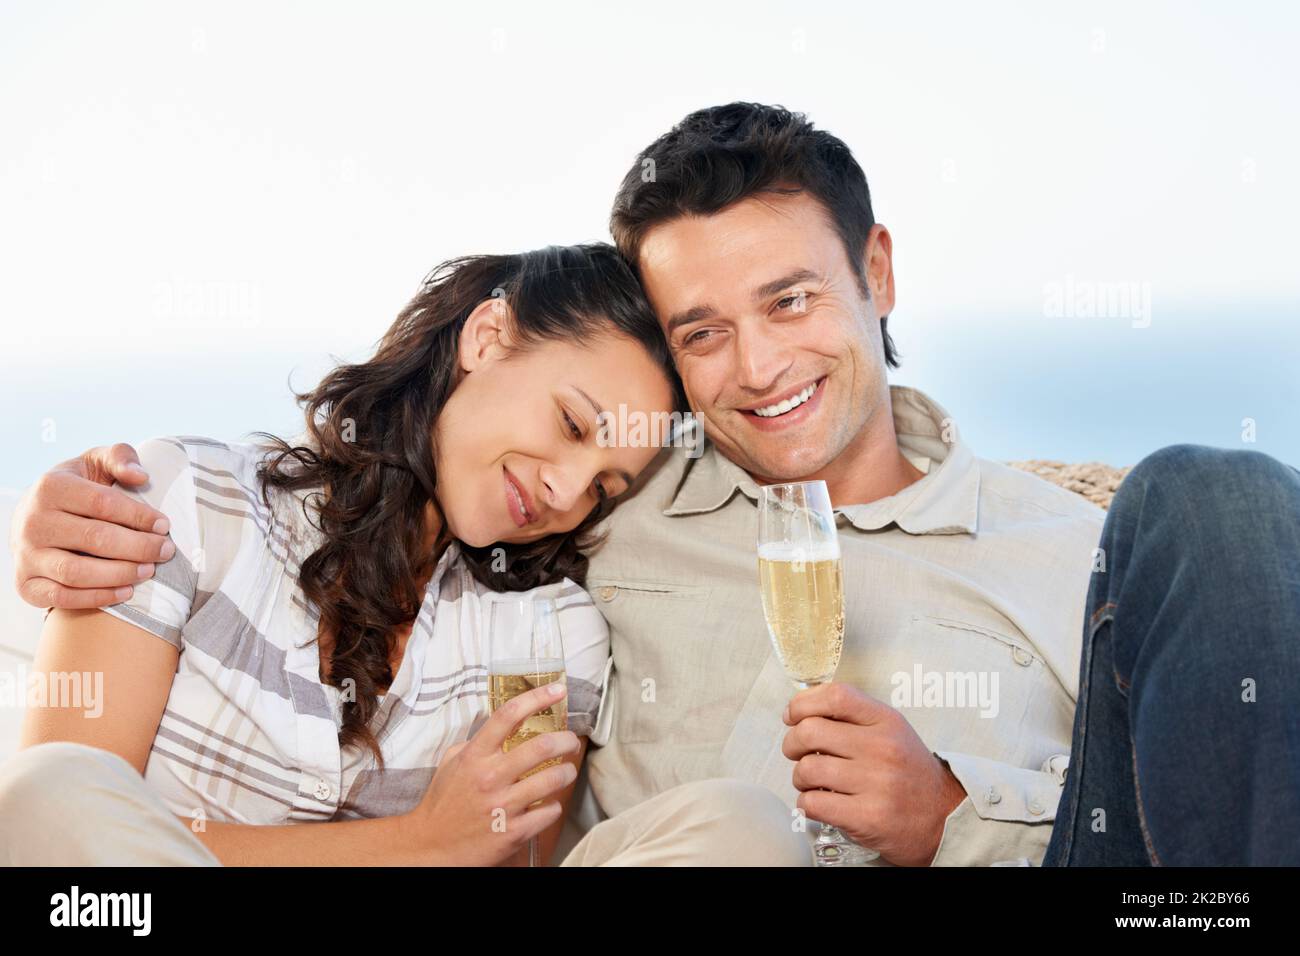 Wir feiern ihre Liebe. Ein süßes Paar, das Champagner mit dem Meer im Hintergrund trinkt. Stockfoto